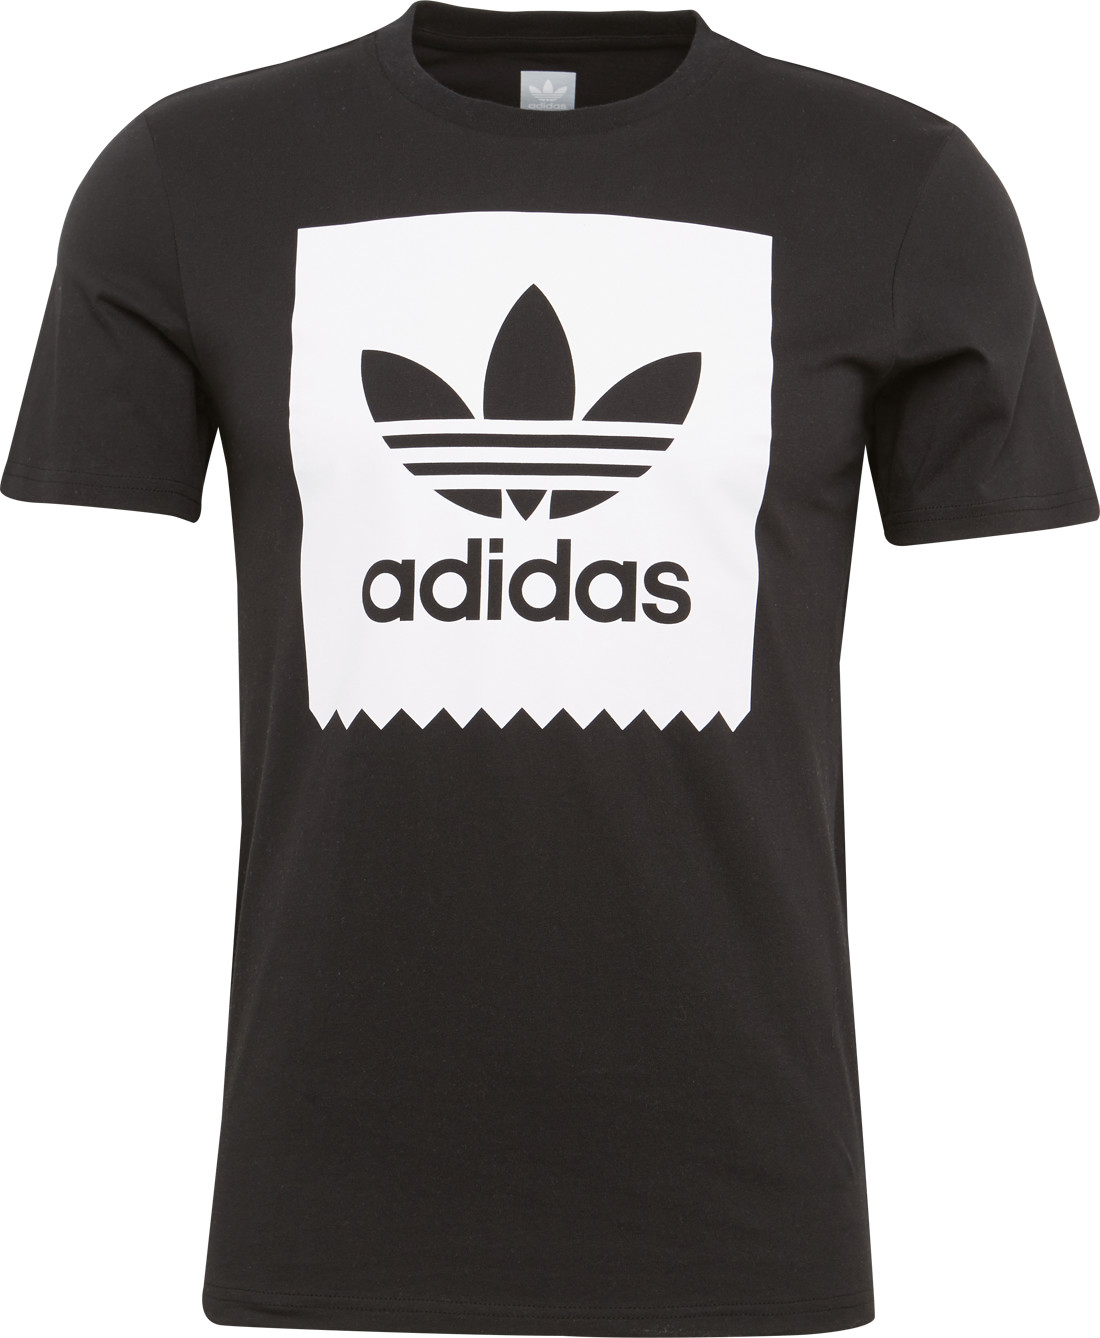 Adidas BB Solid T-Shirt black/white